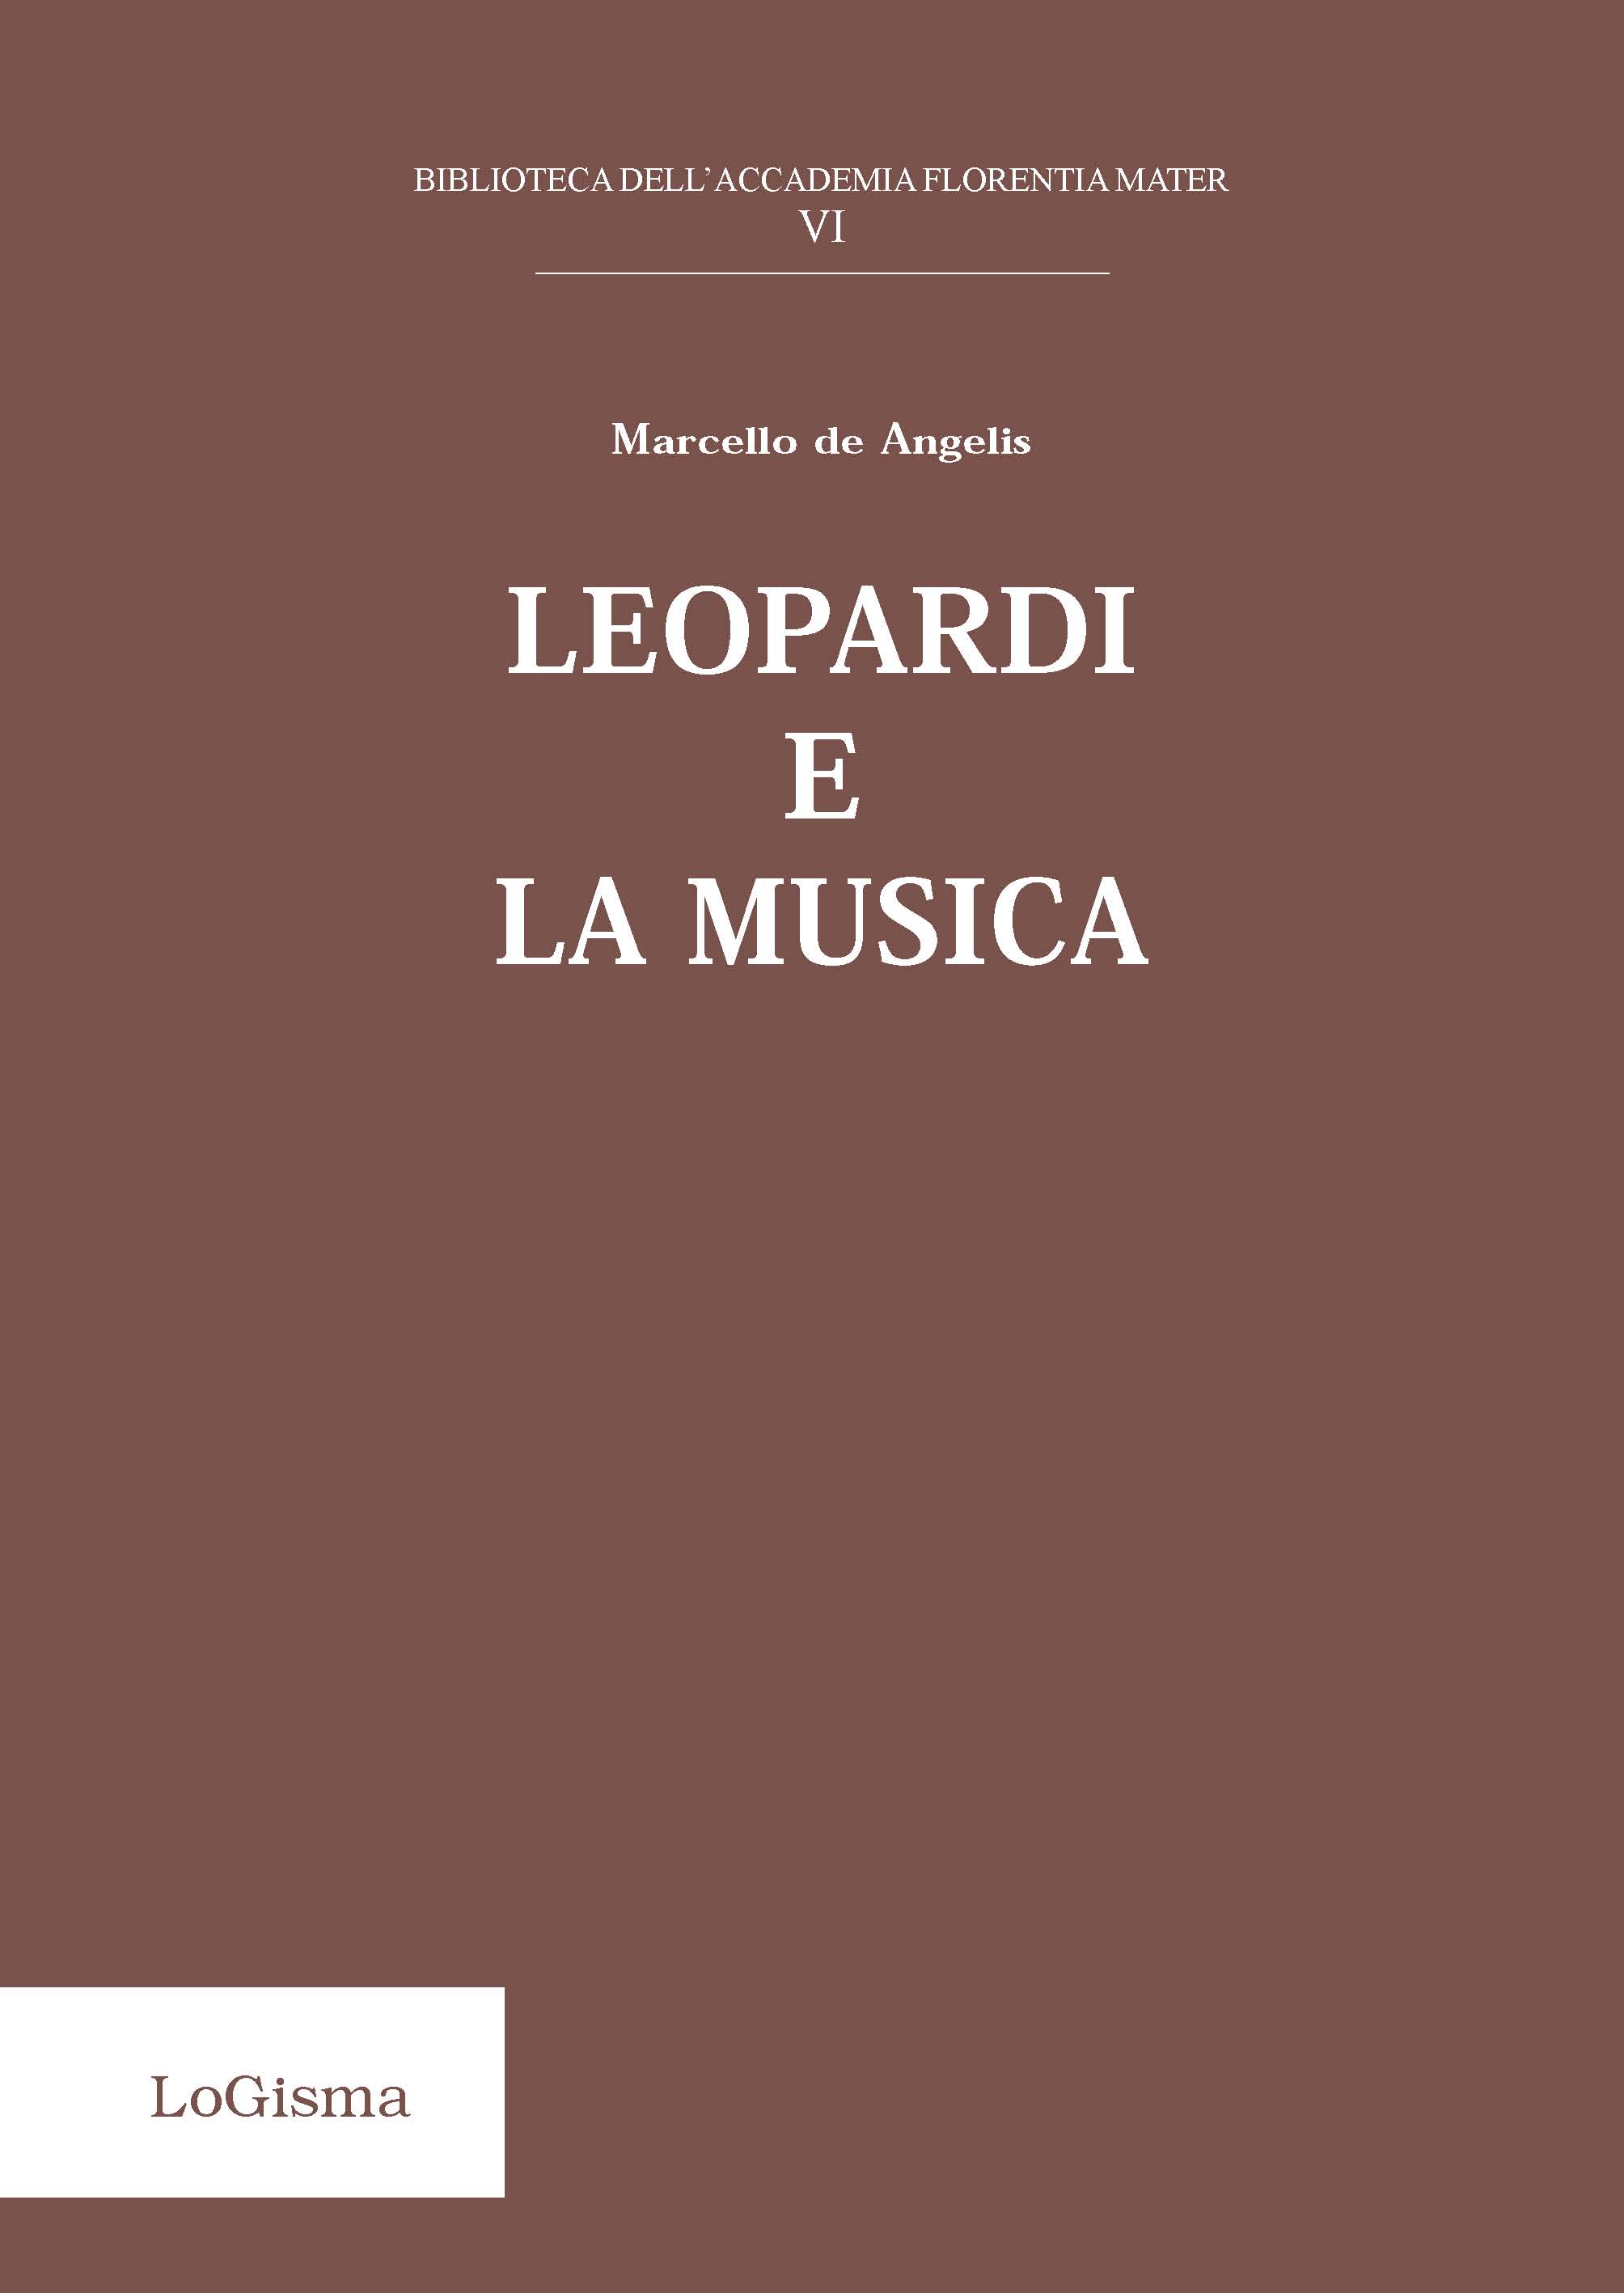 E-book, Leopardi e la musica, De Angelis, Marcello, LoGisma